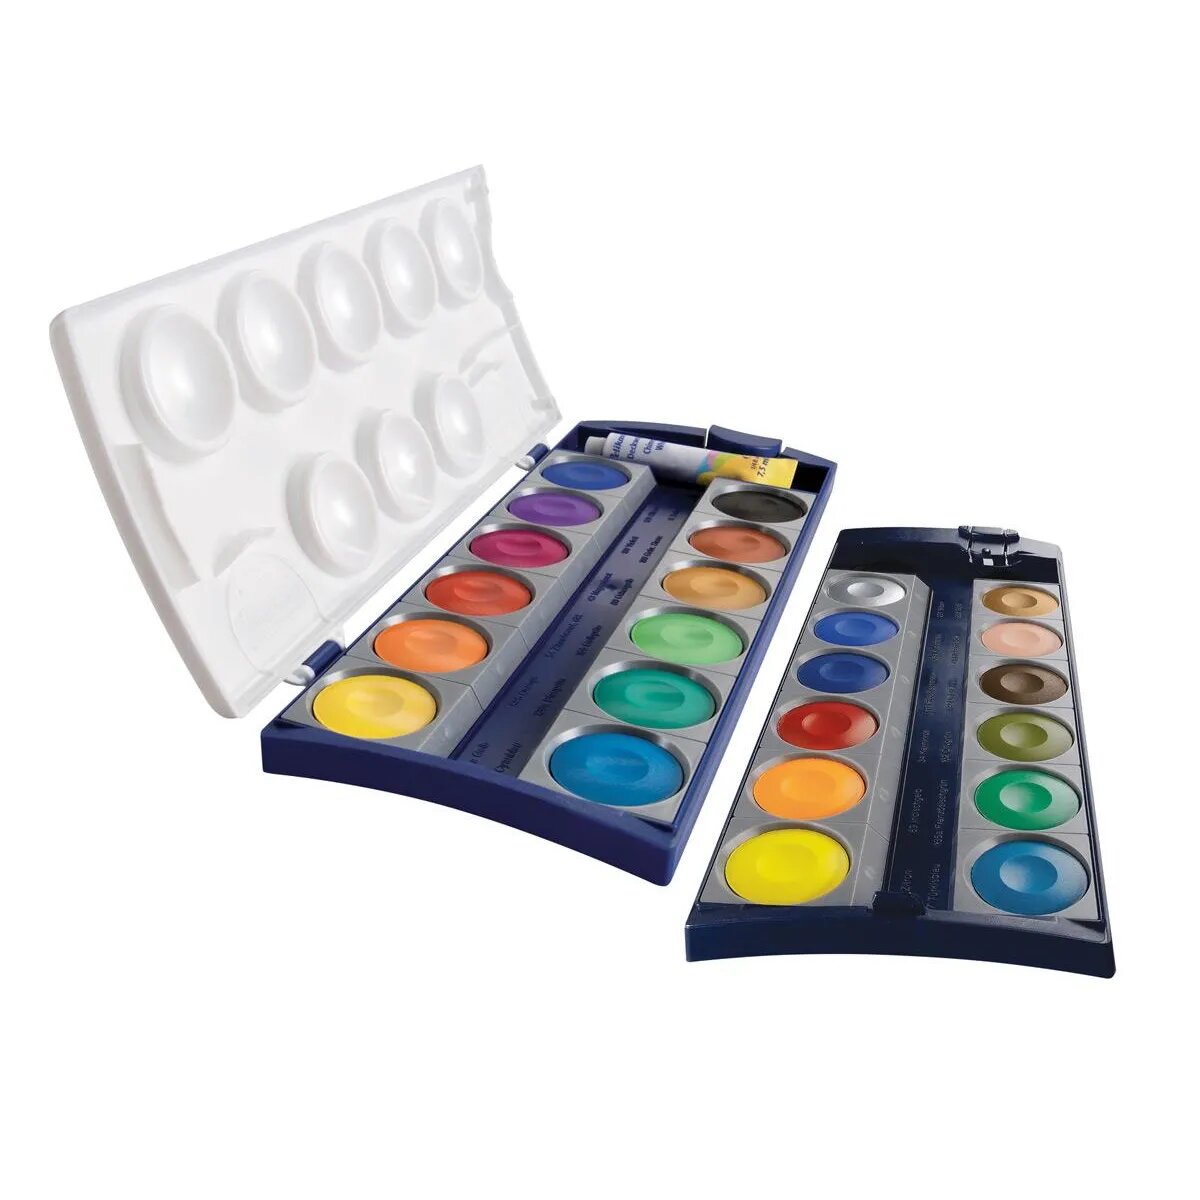 Pelikan Deckfarbkasten K24 mit 24 Farben und 1 Tube Deckweiß